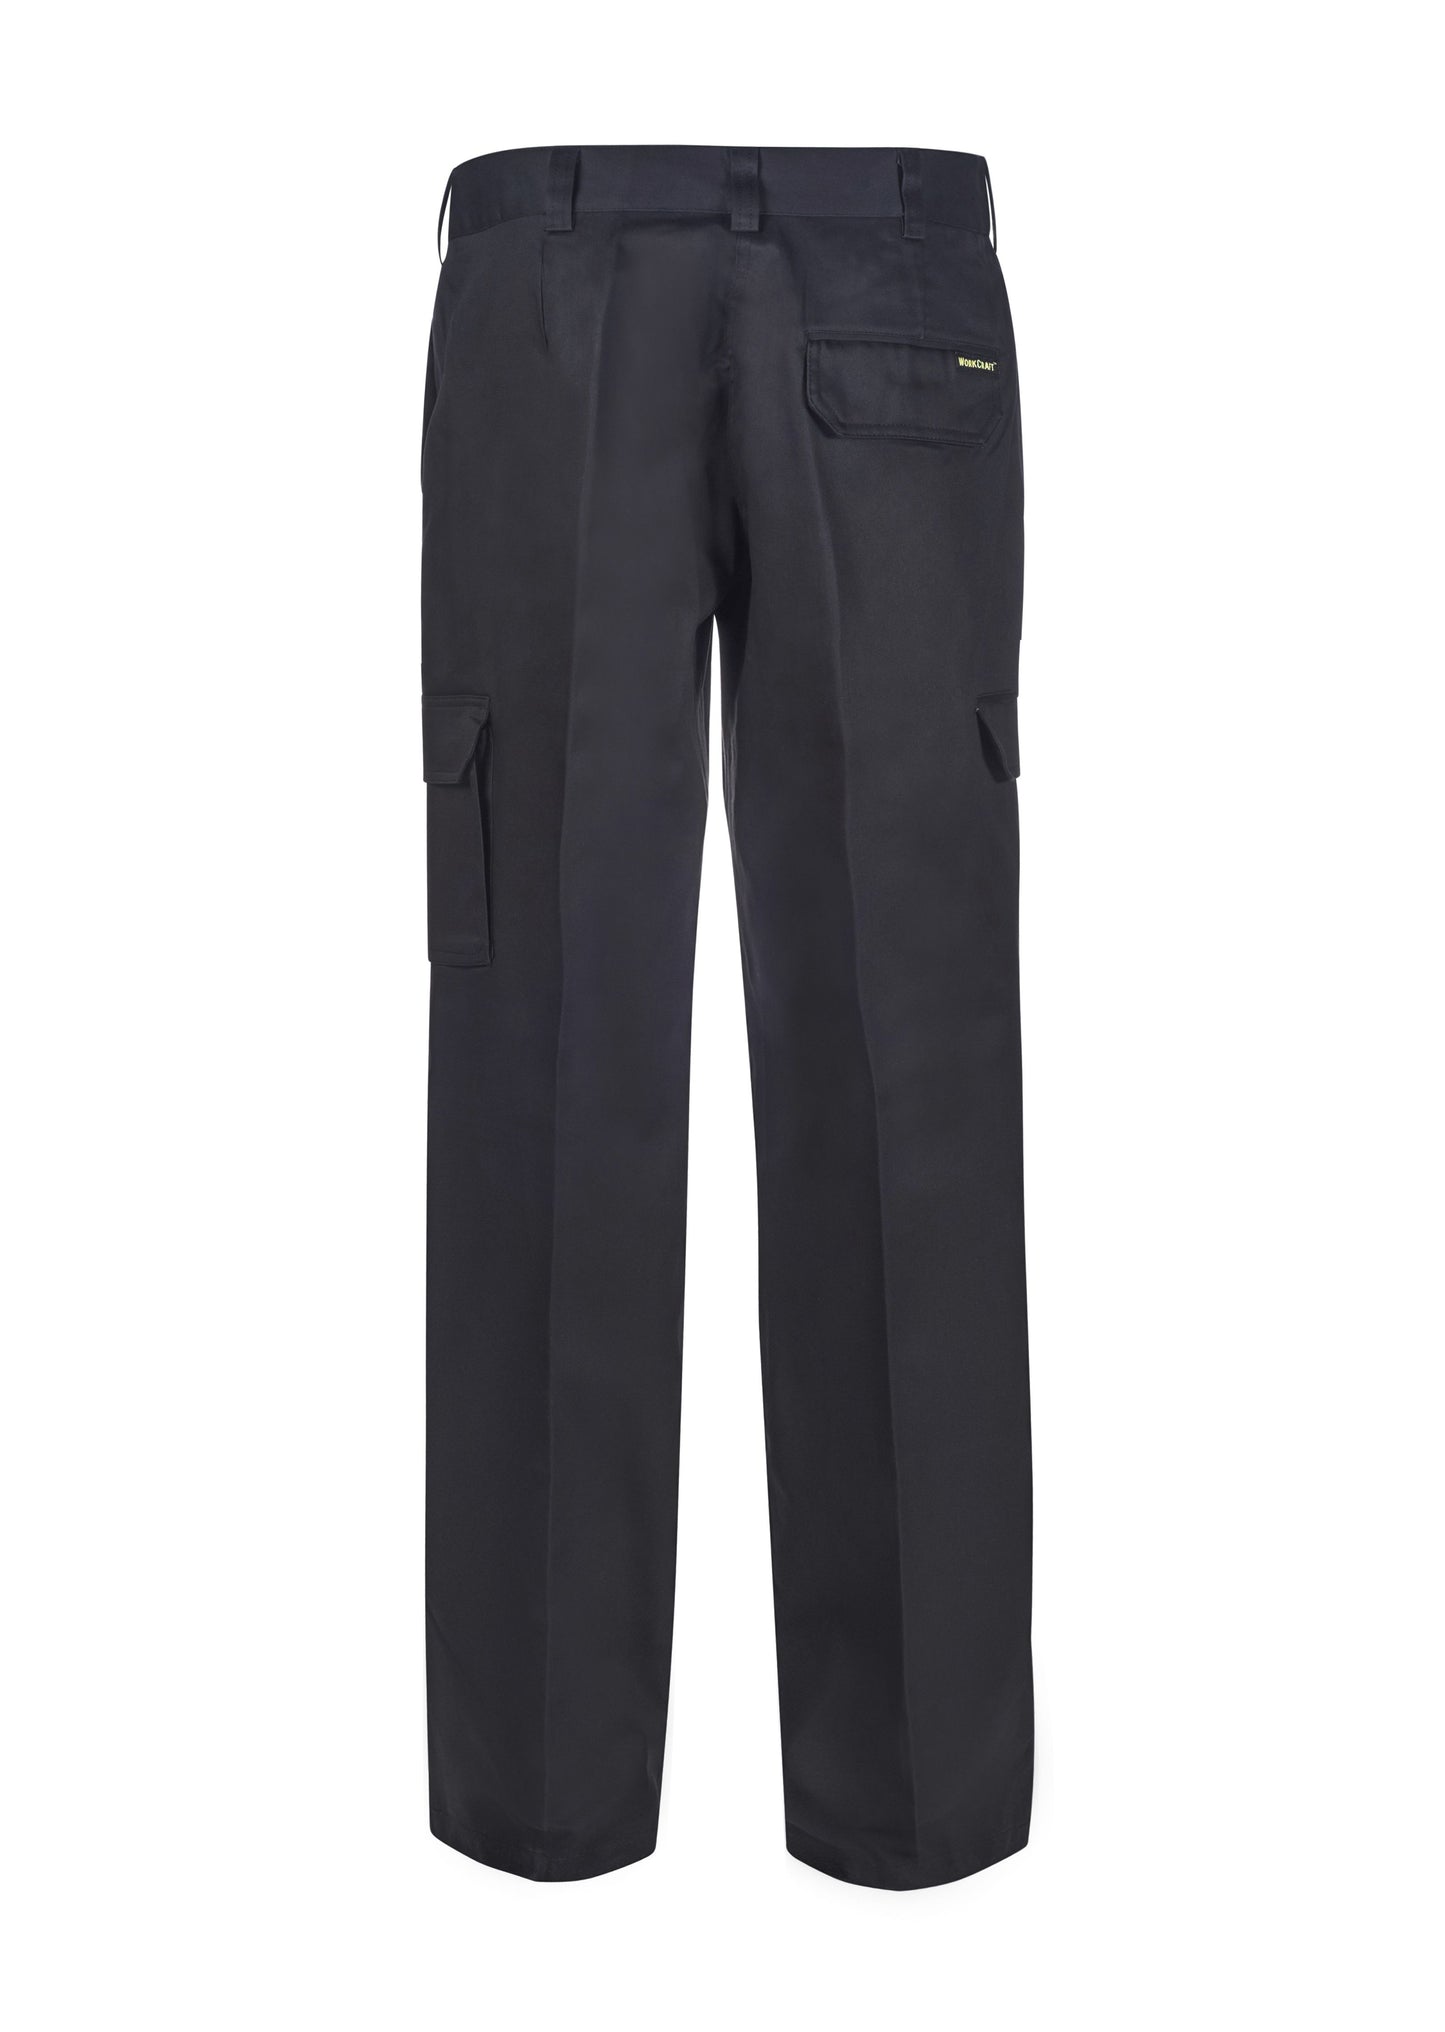 WORKCRAFT WPL070 Ladies Cargo Trouser - Star Uniforms Australia